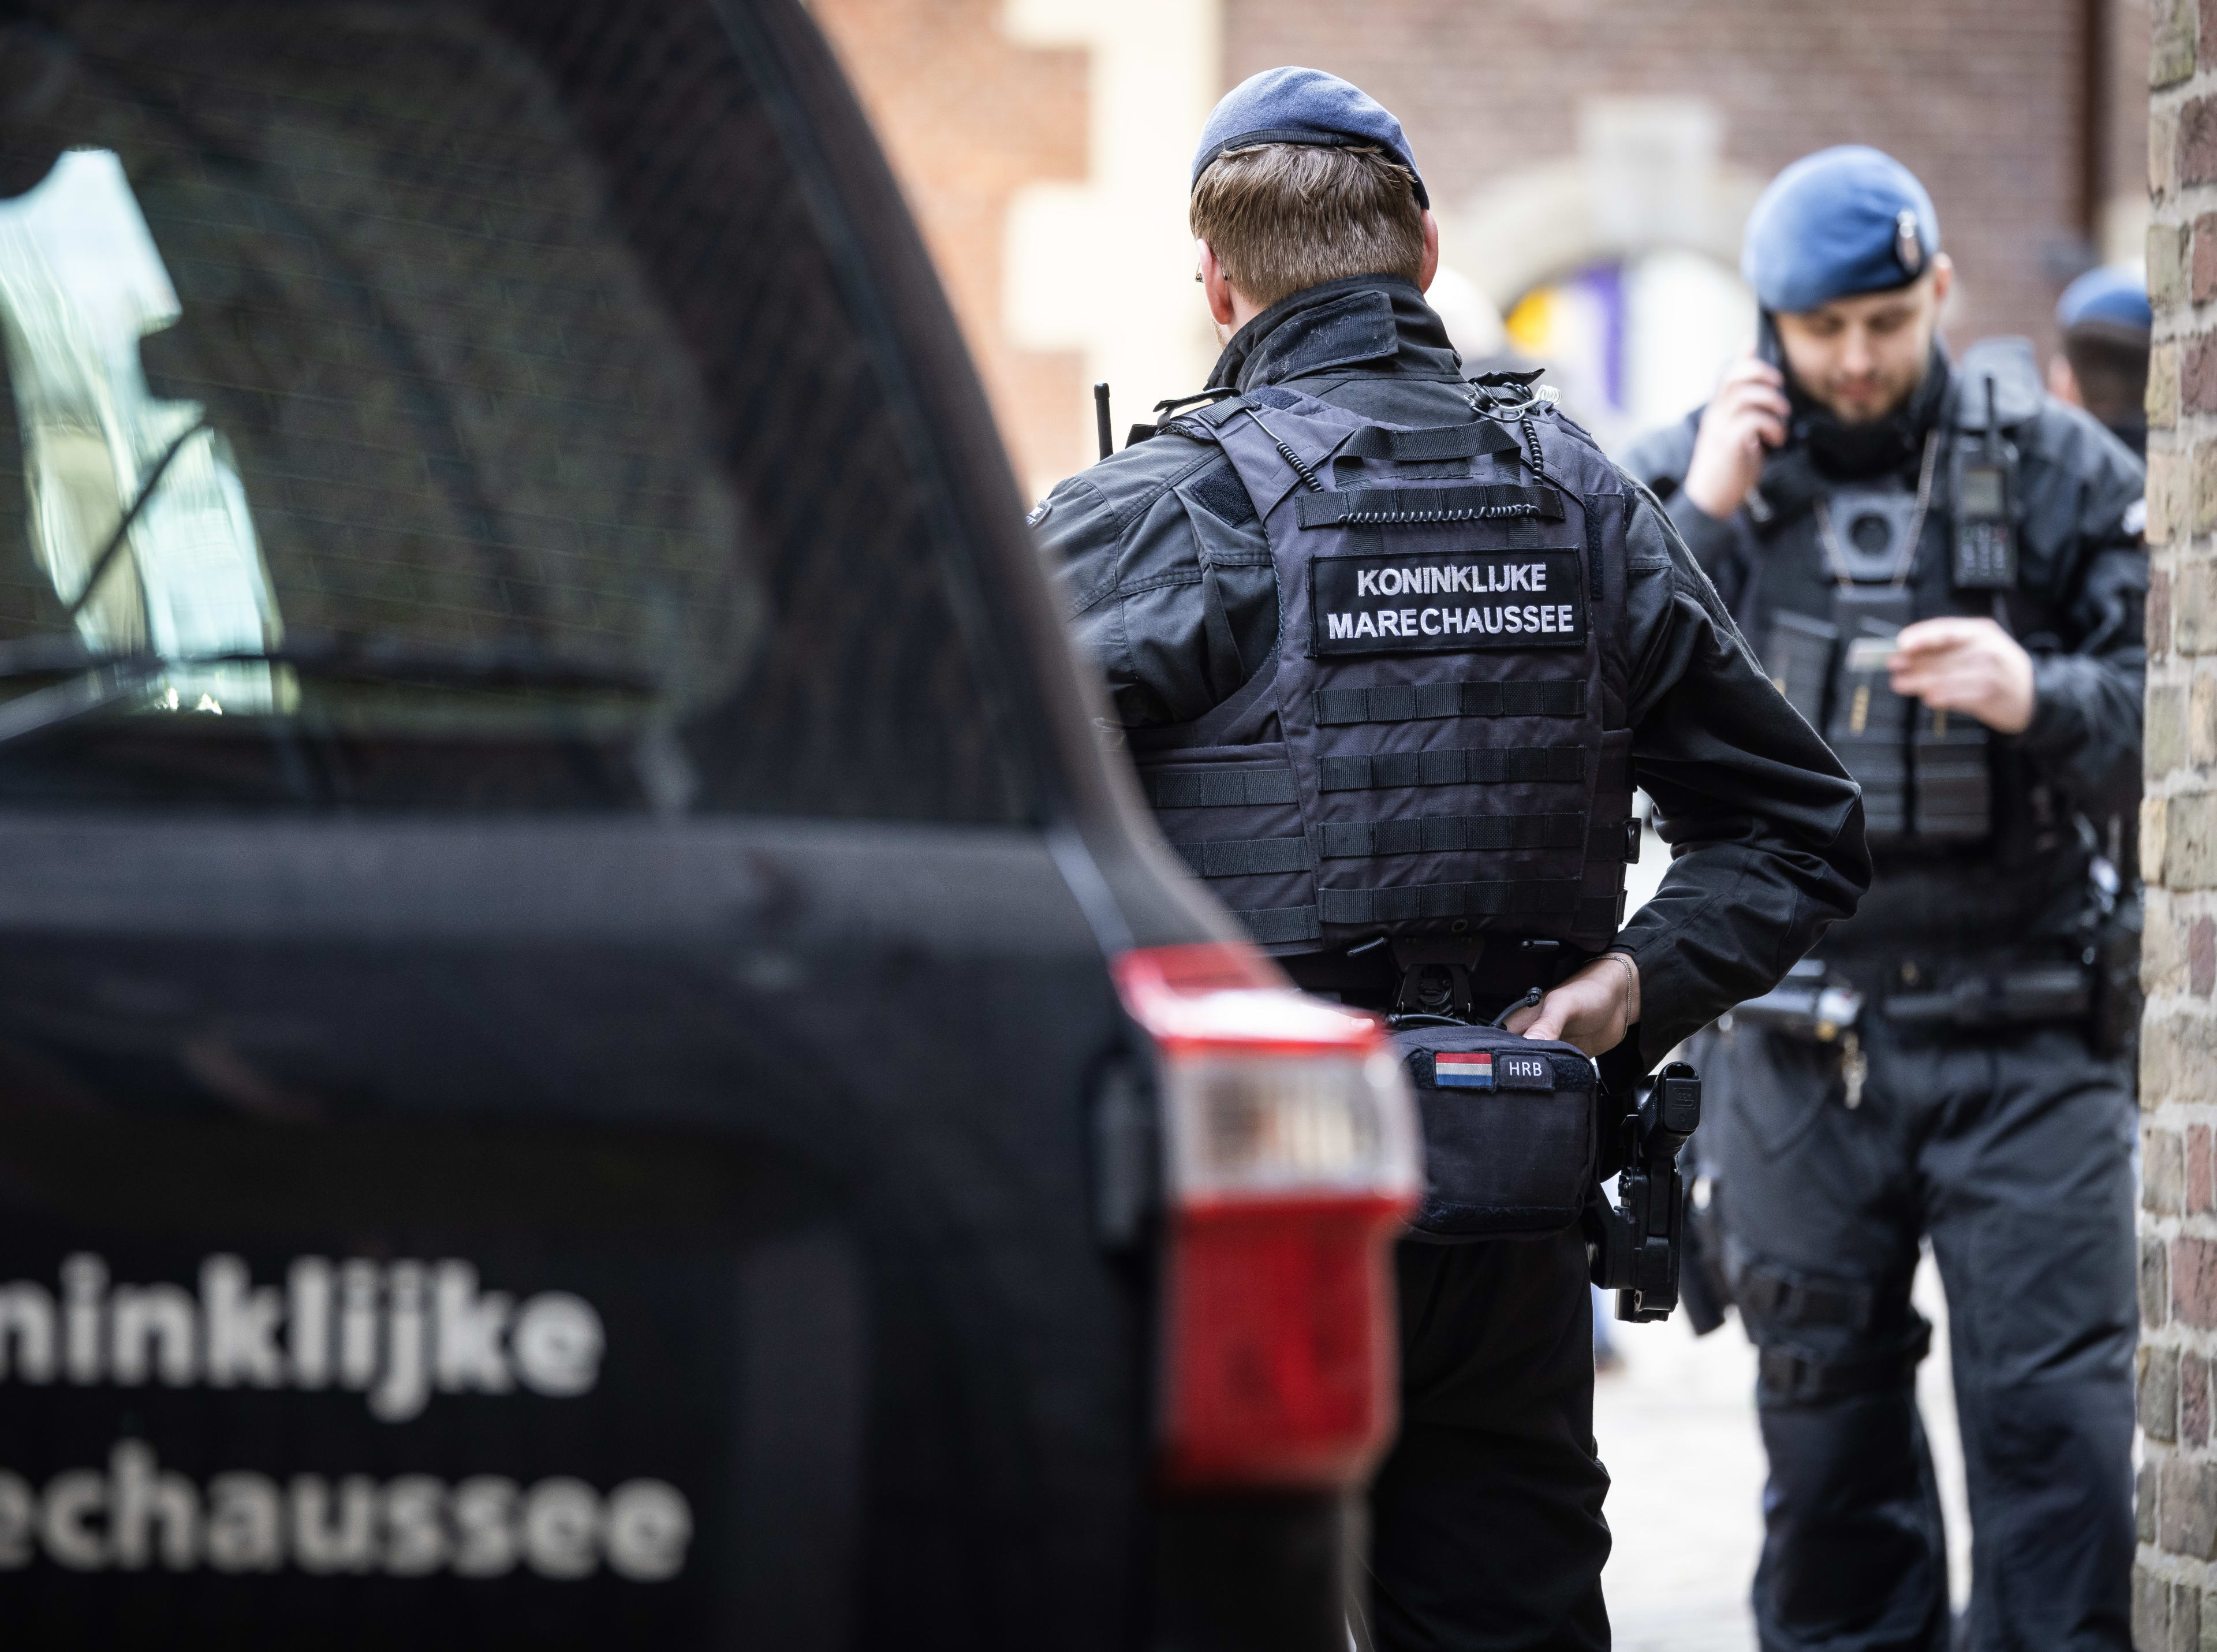 Aanhouding in Nederland om voorbereiden aanslag